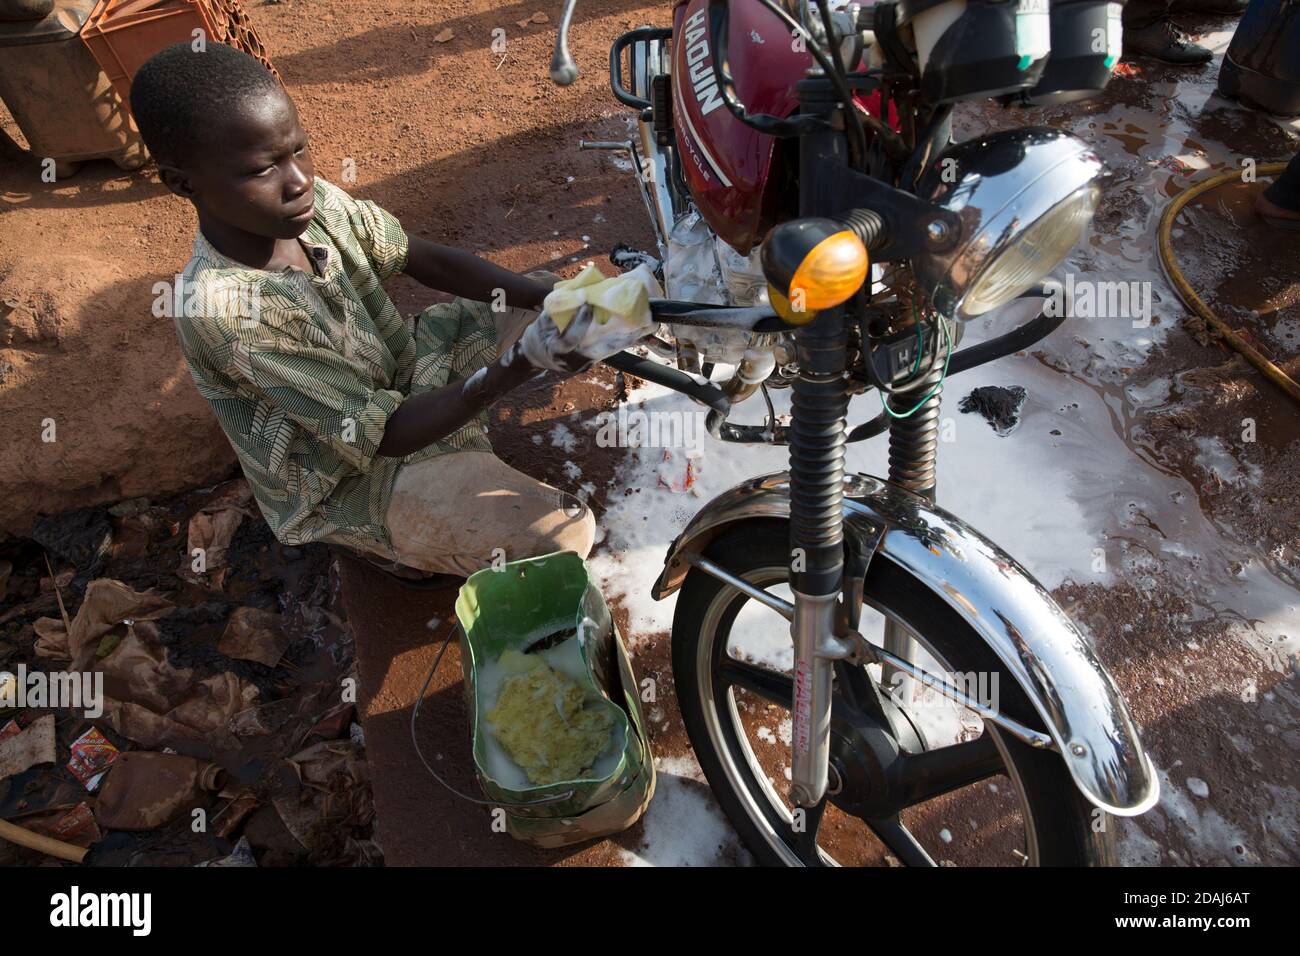 Selingue, Mali, 25. April 2015; Tiema Tounkara, 14, und Afon Troure, 19, putzen Motorräder, beide arbeiten für ihren Vater. Tiema geht zur Schule und arbeitet am Nachmittag. Afon verließ letztes Jahr die Schule. Sie berechnen 250 CFA, um jedes Fahrrad zu reinigen, und reinigen etwa 15 Fahrräder pro Tag zwischen ihnen. Stockfoto